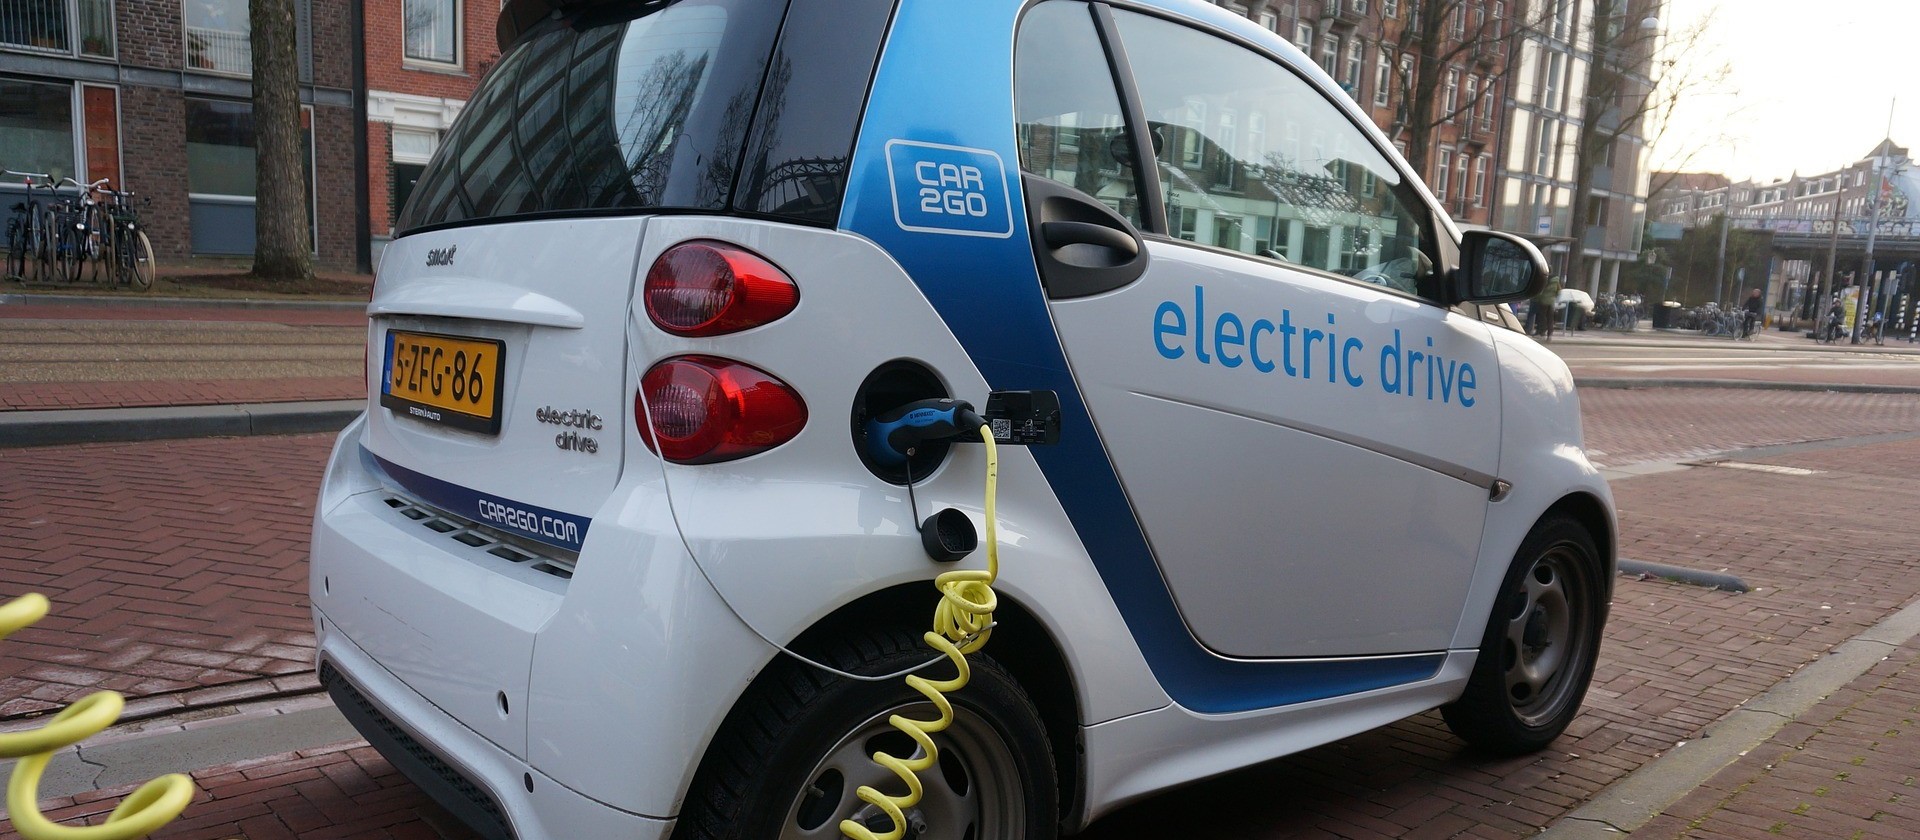 Frota de carros elétricos vai abrir novas oportunidades e responsabilidades